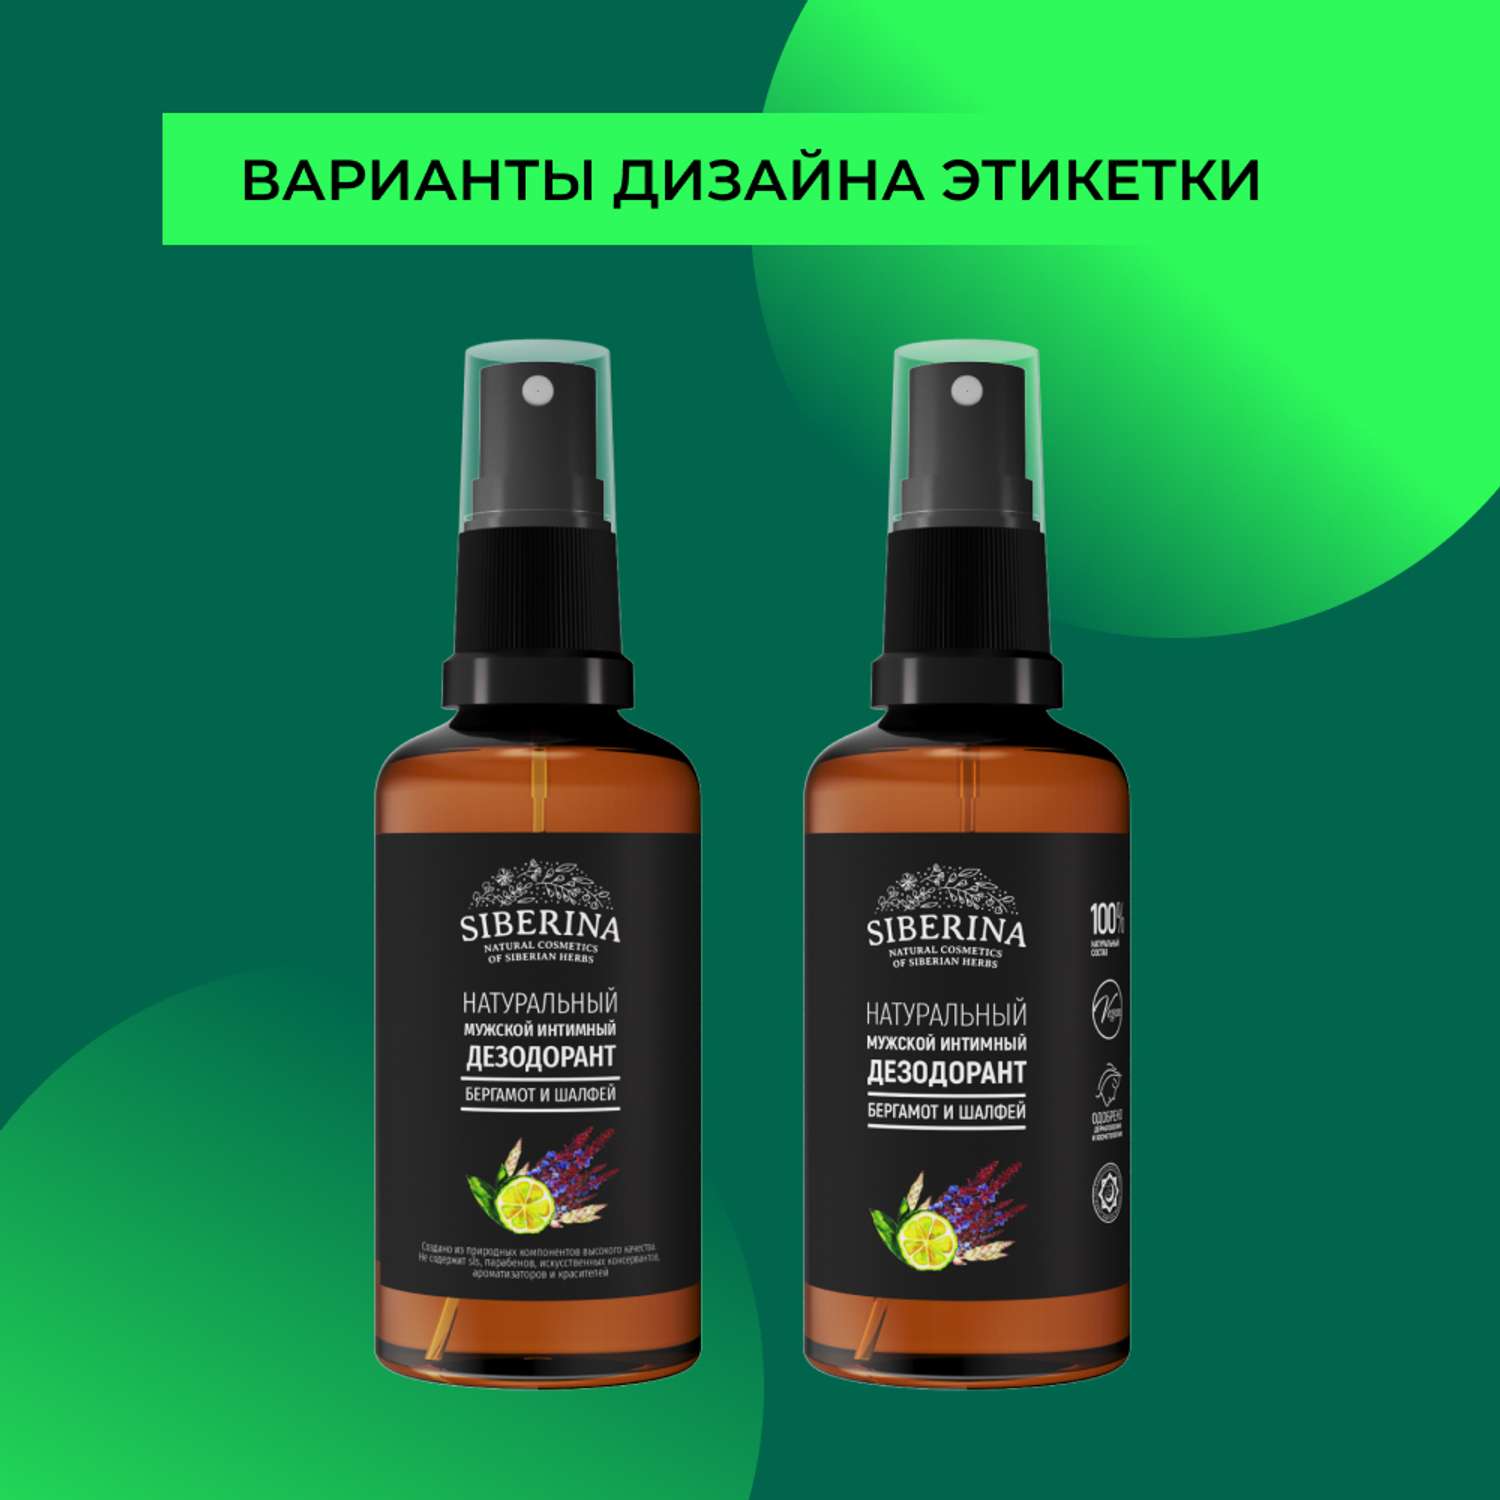 Интимный дезодорант Siberina натуральный «Бергамот и шалфей» мужской 50 мл - фото 9